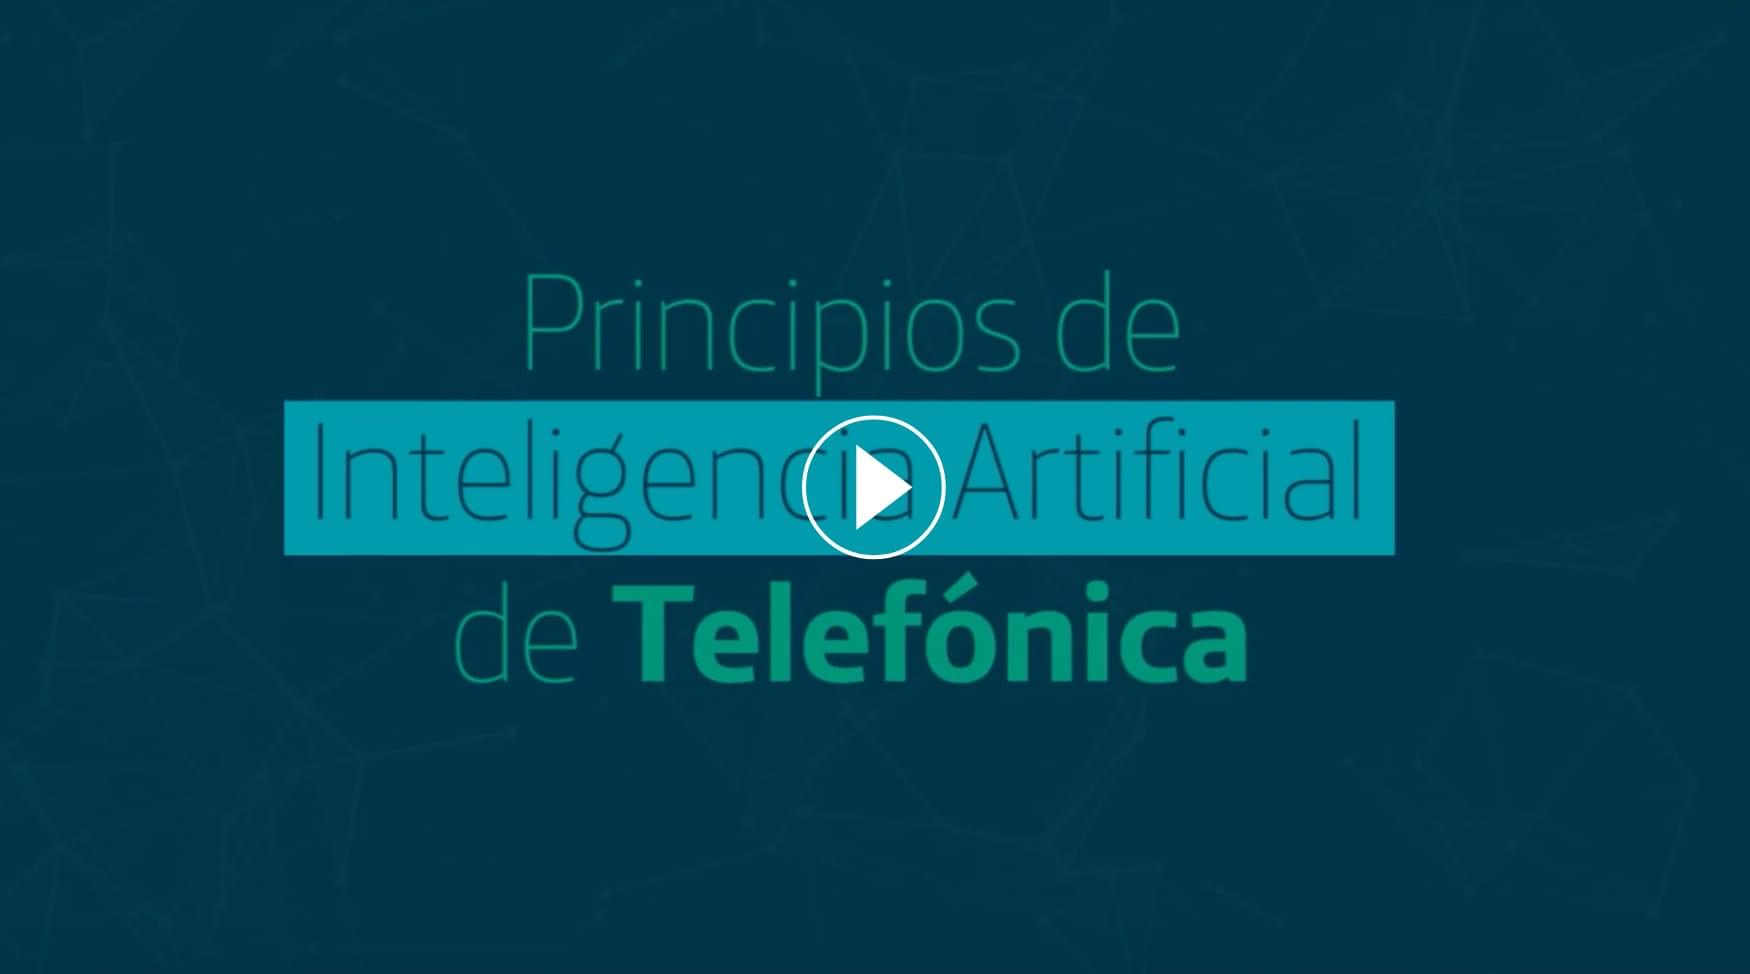 Bei Telefónica arbeiten wir nach verantwortungsvollen KI-Prinzipien.